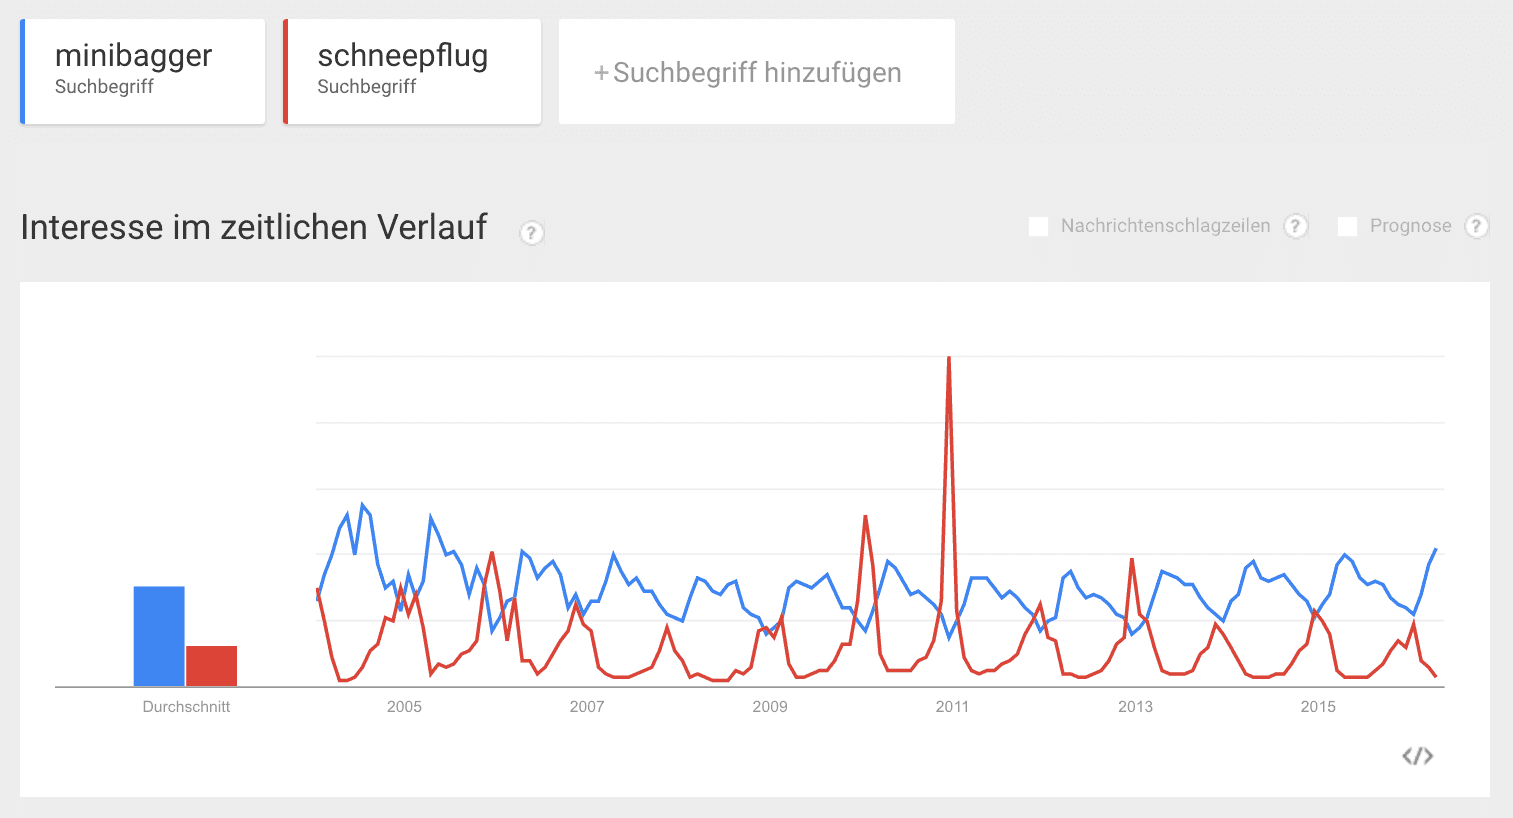 Google Trends Graphen im Vergleich zu den Keywords minibagger und schneeflug